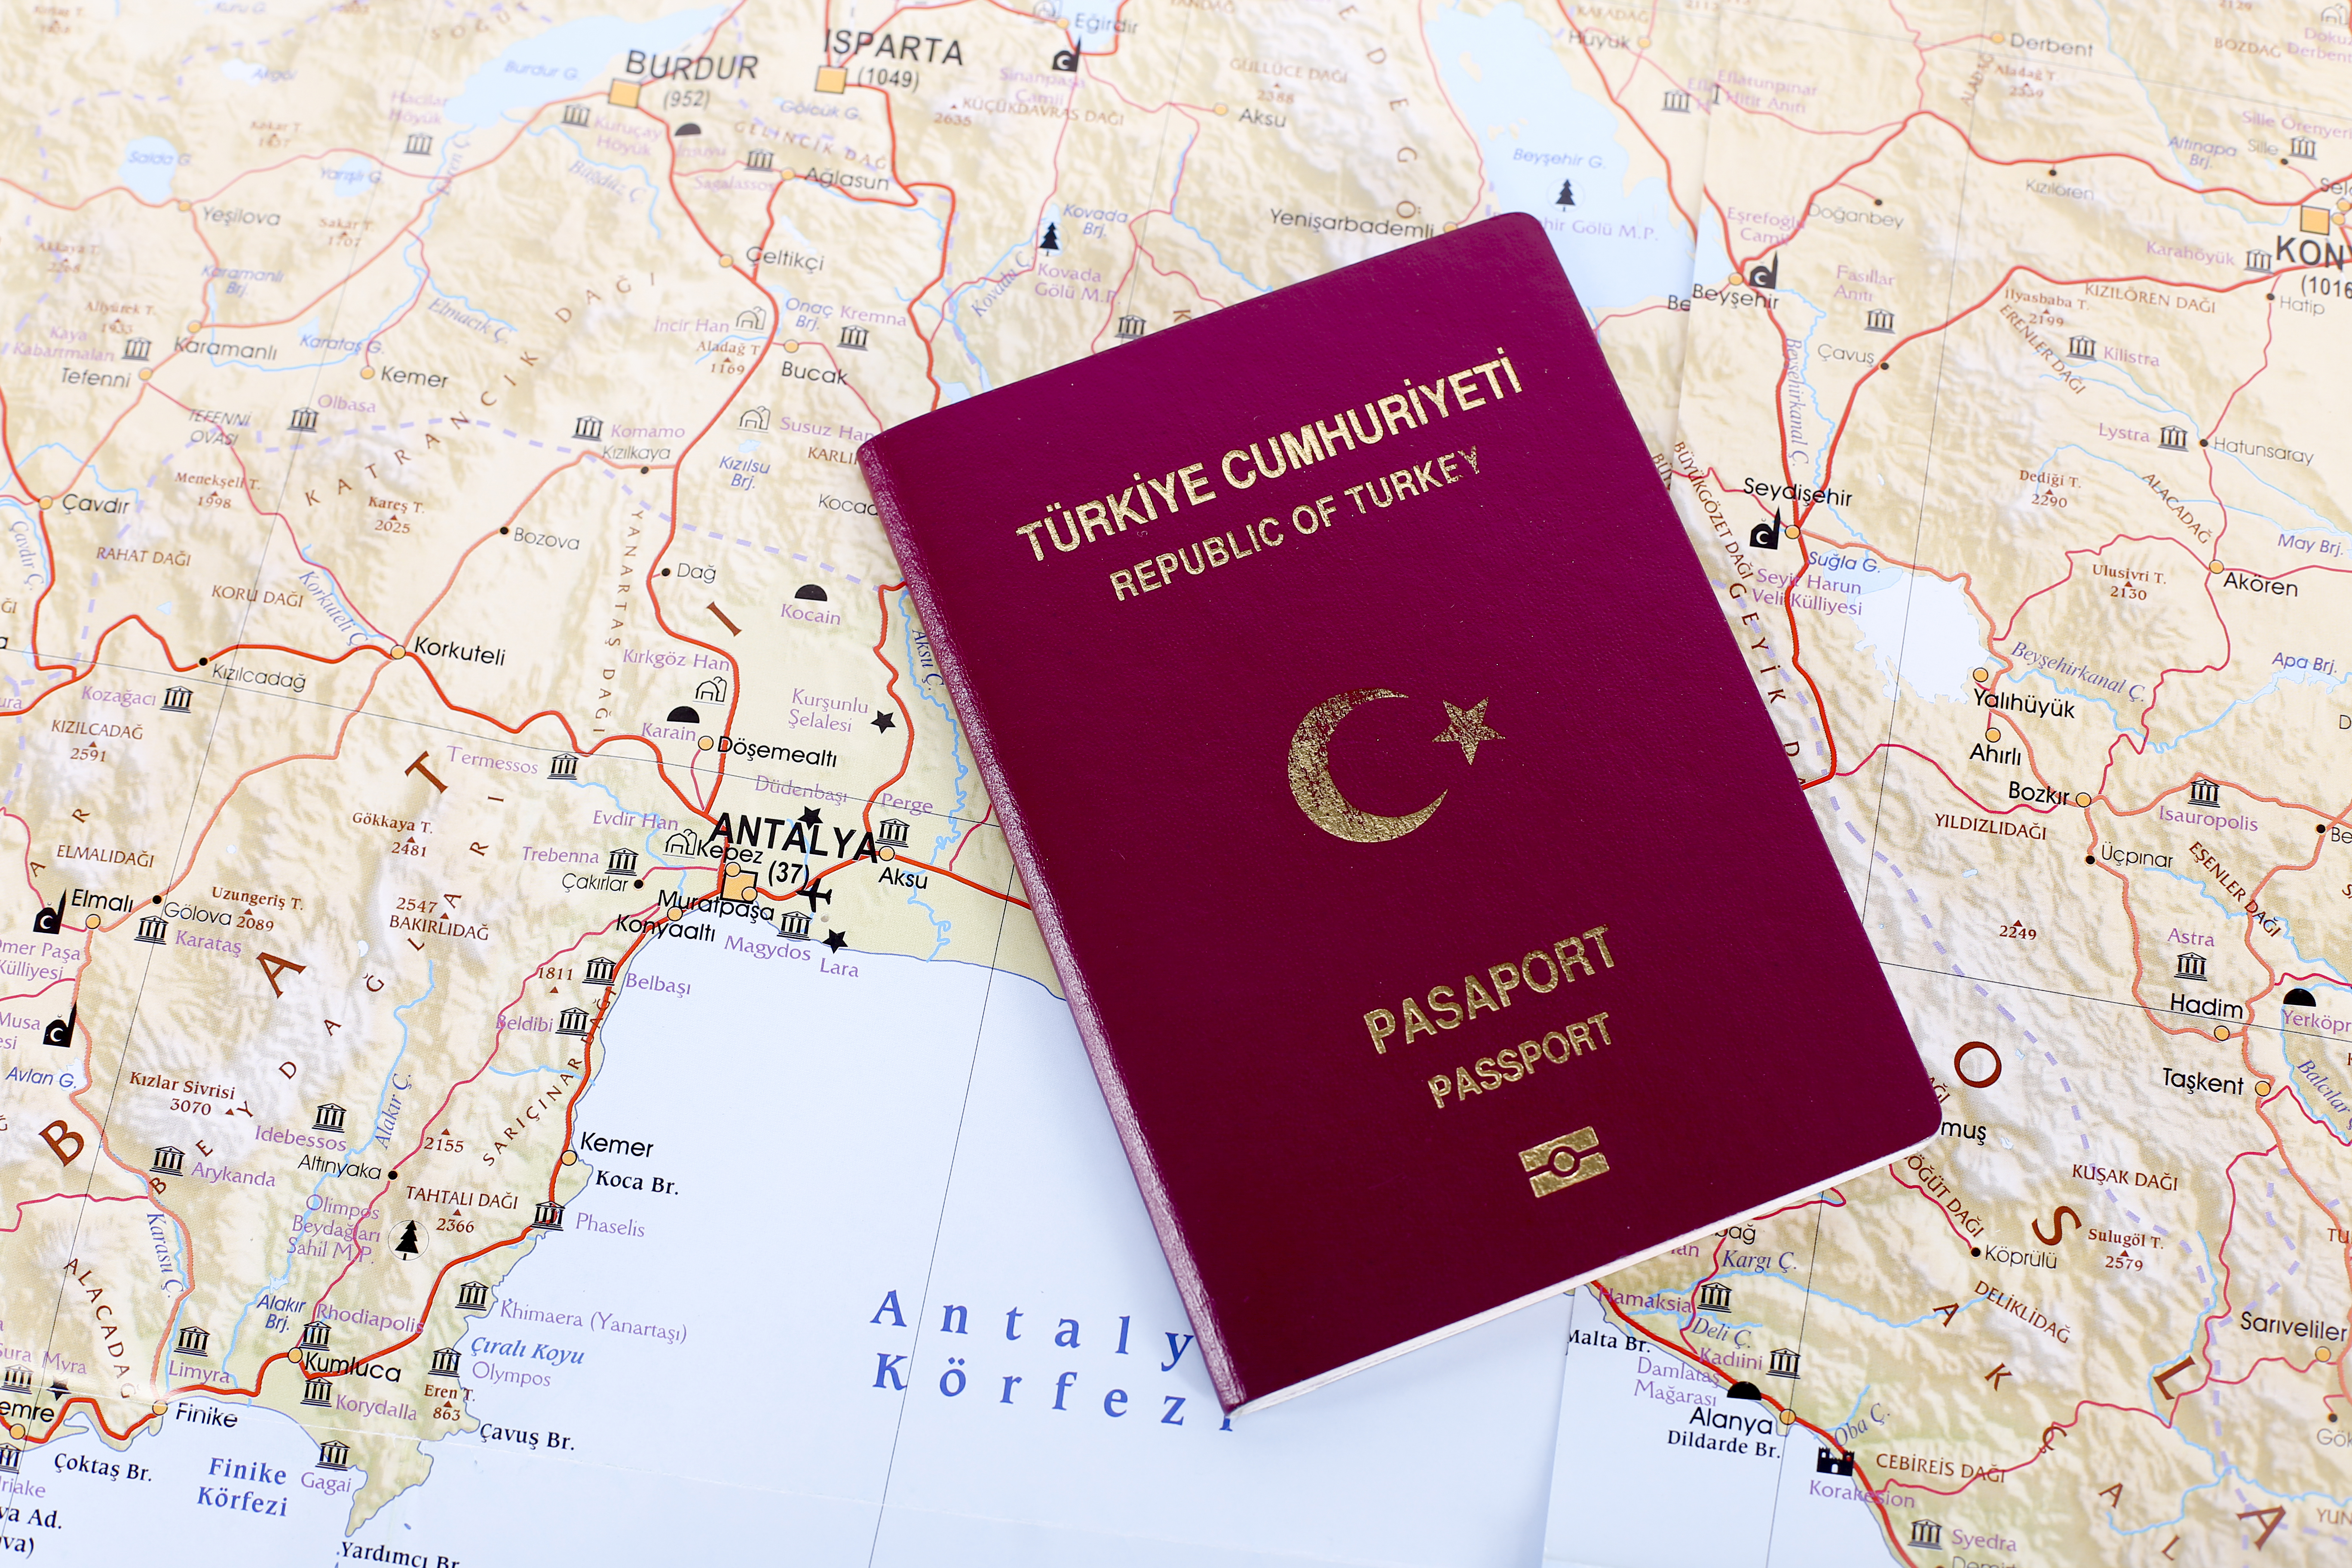 Турецкий паспорт, который могут получить иностранцы